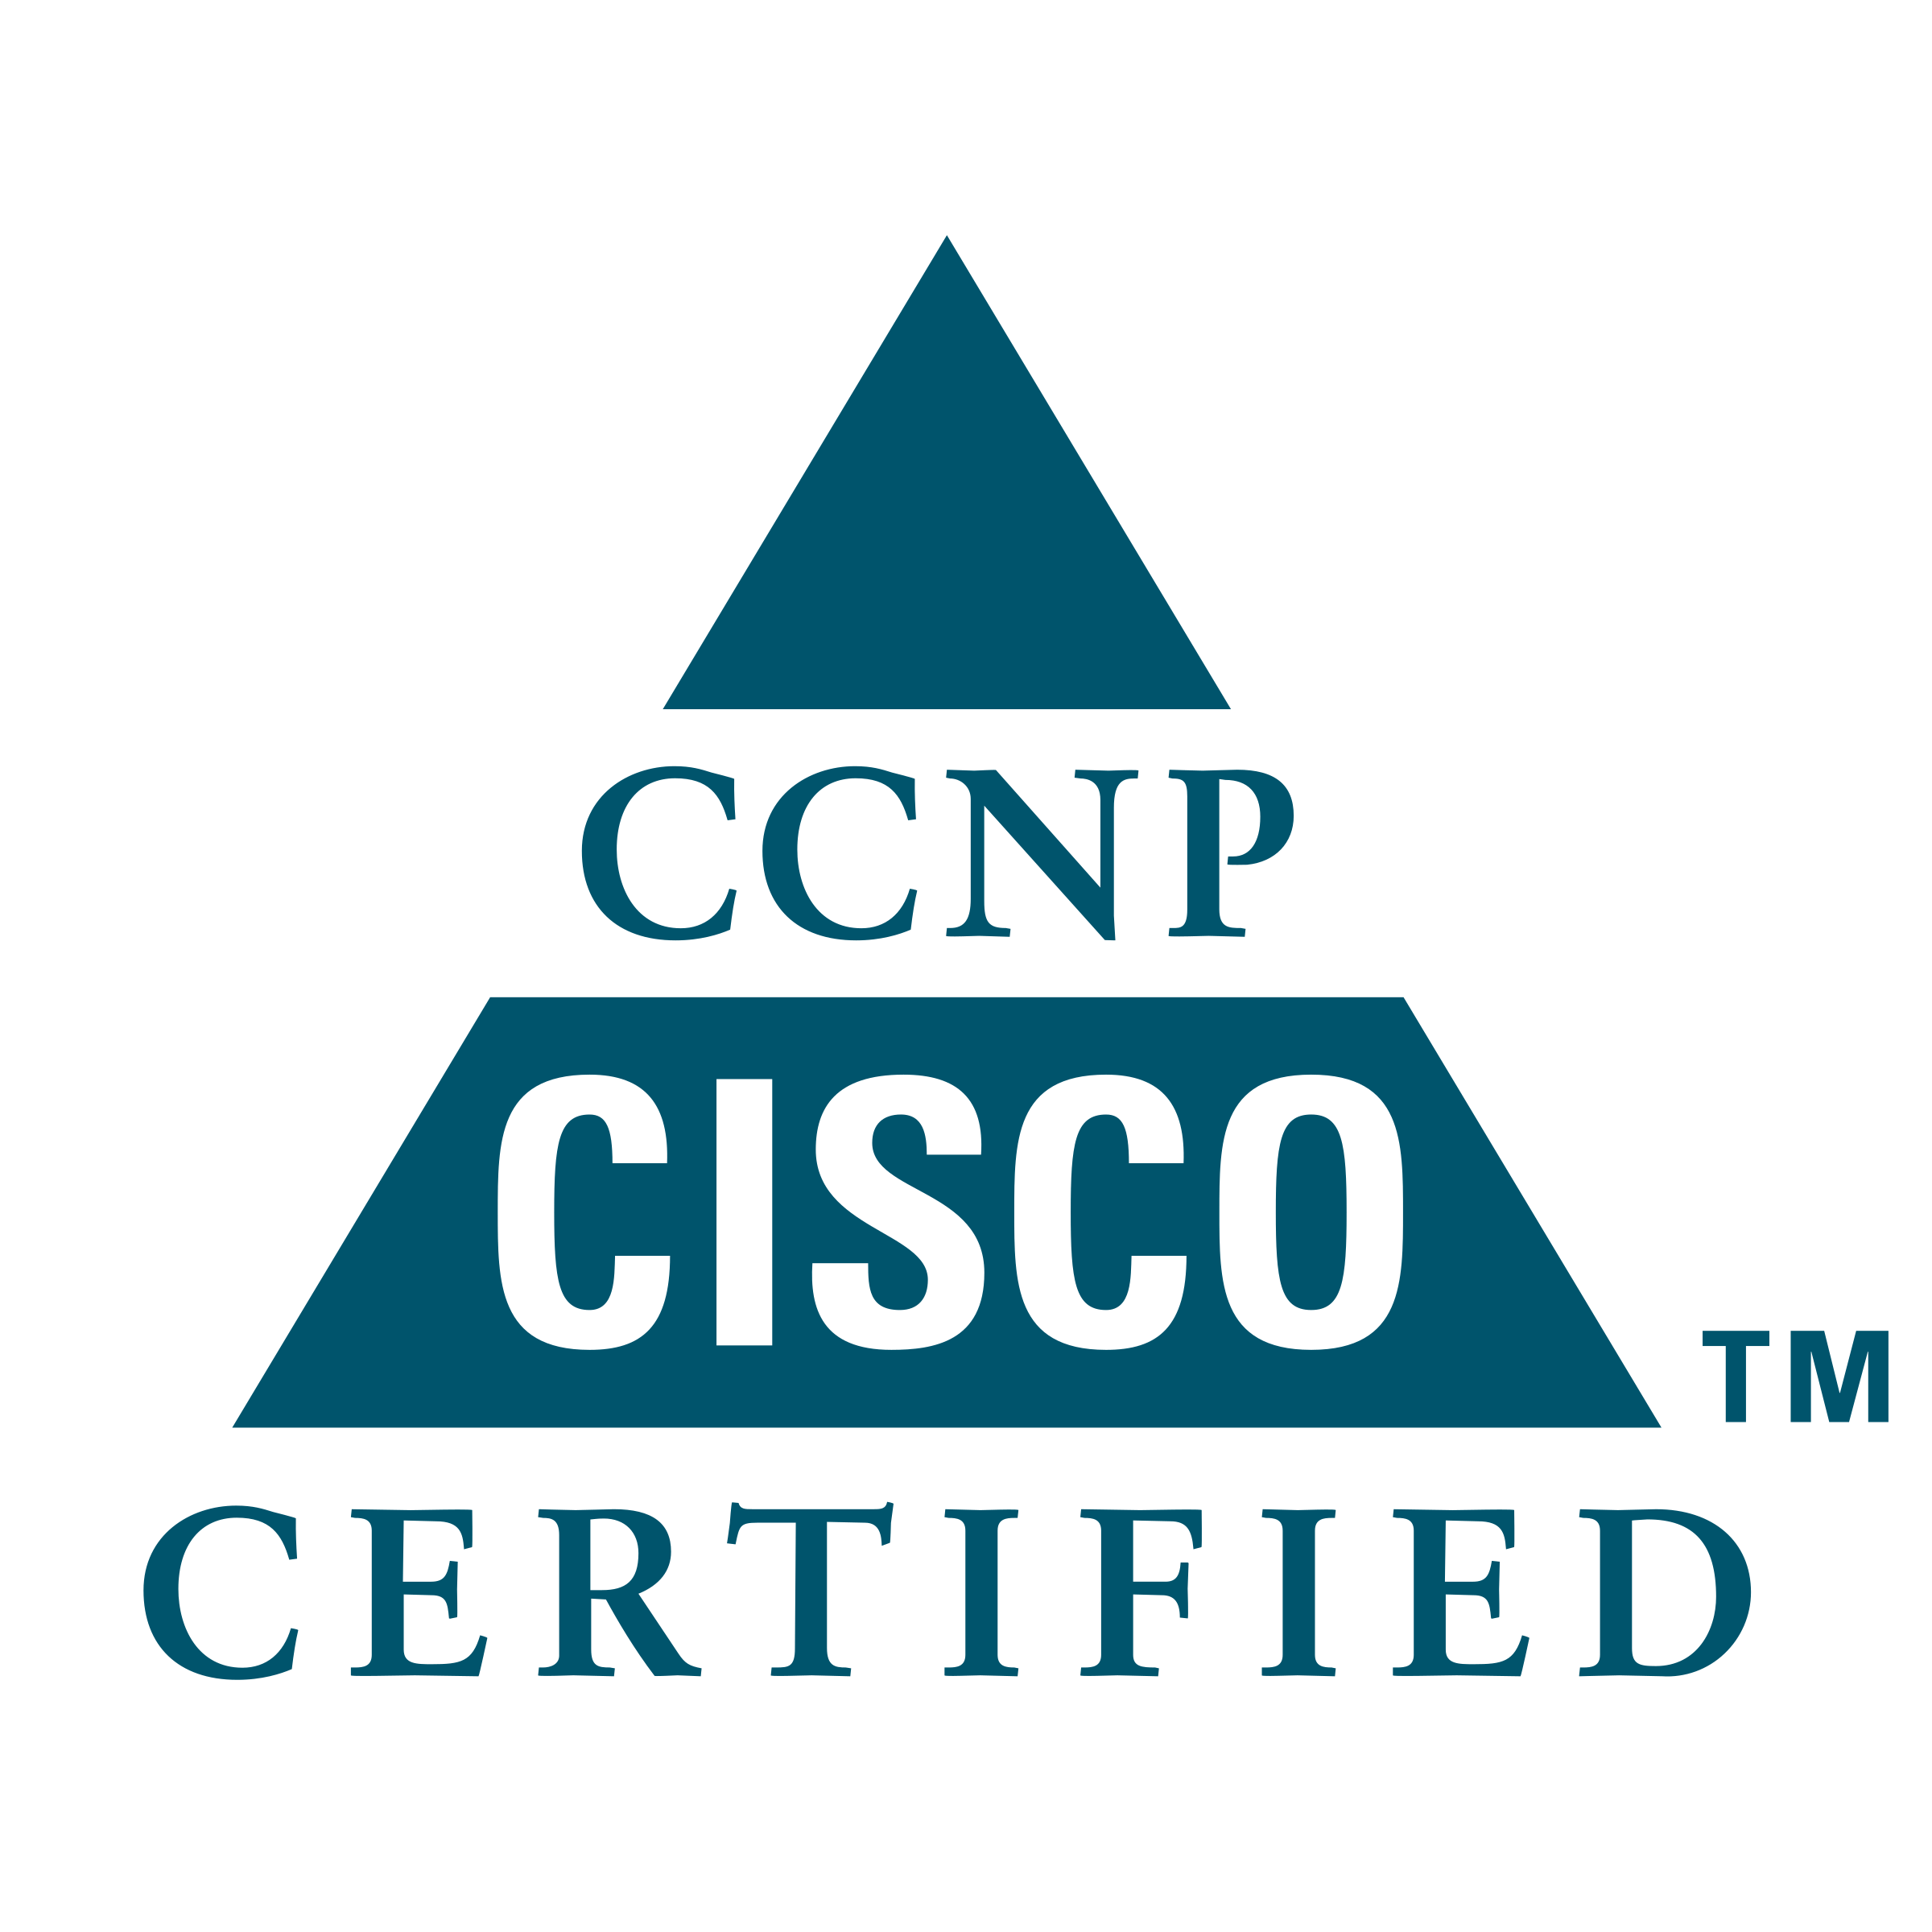 CCNP Logo - CCNP Logo PNG Transparent & SVG Vector